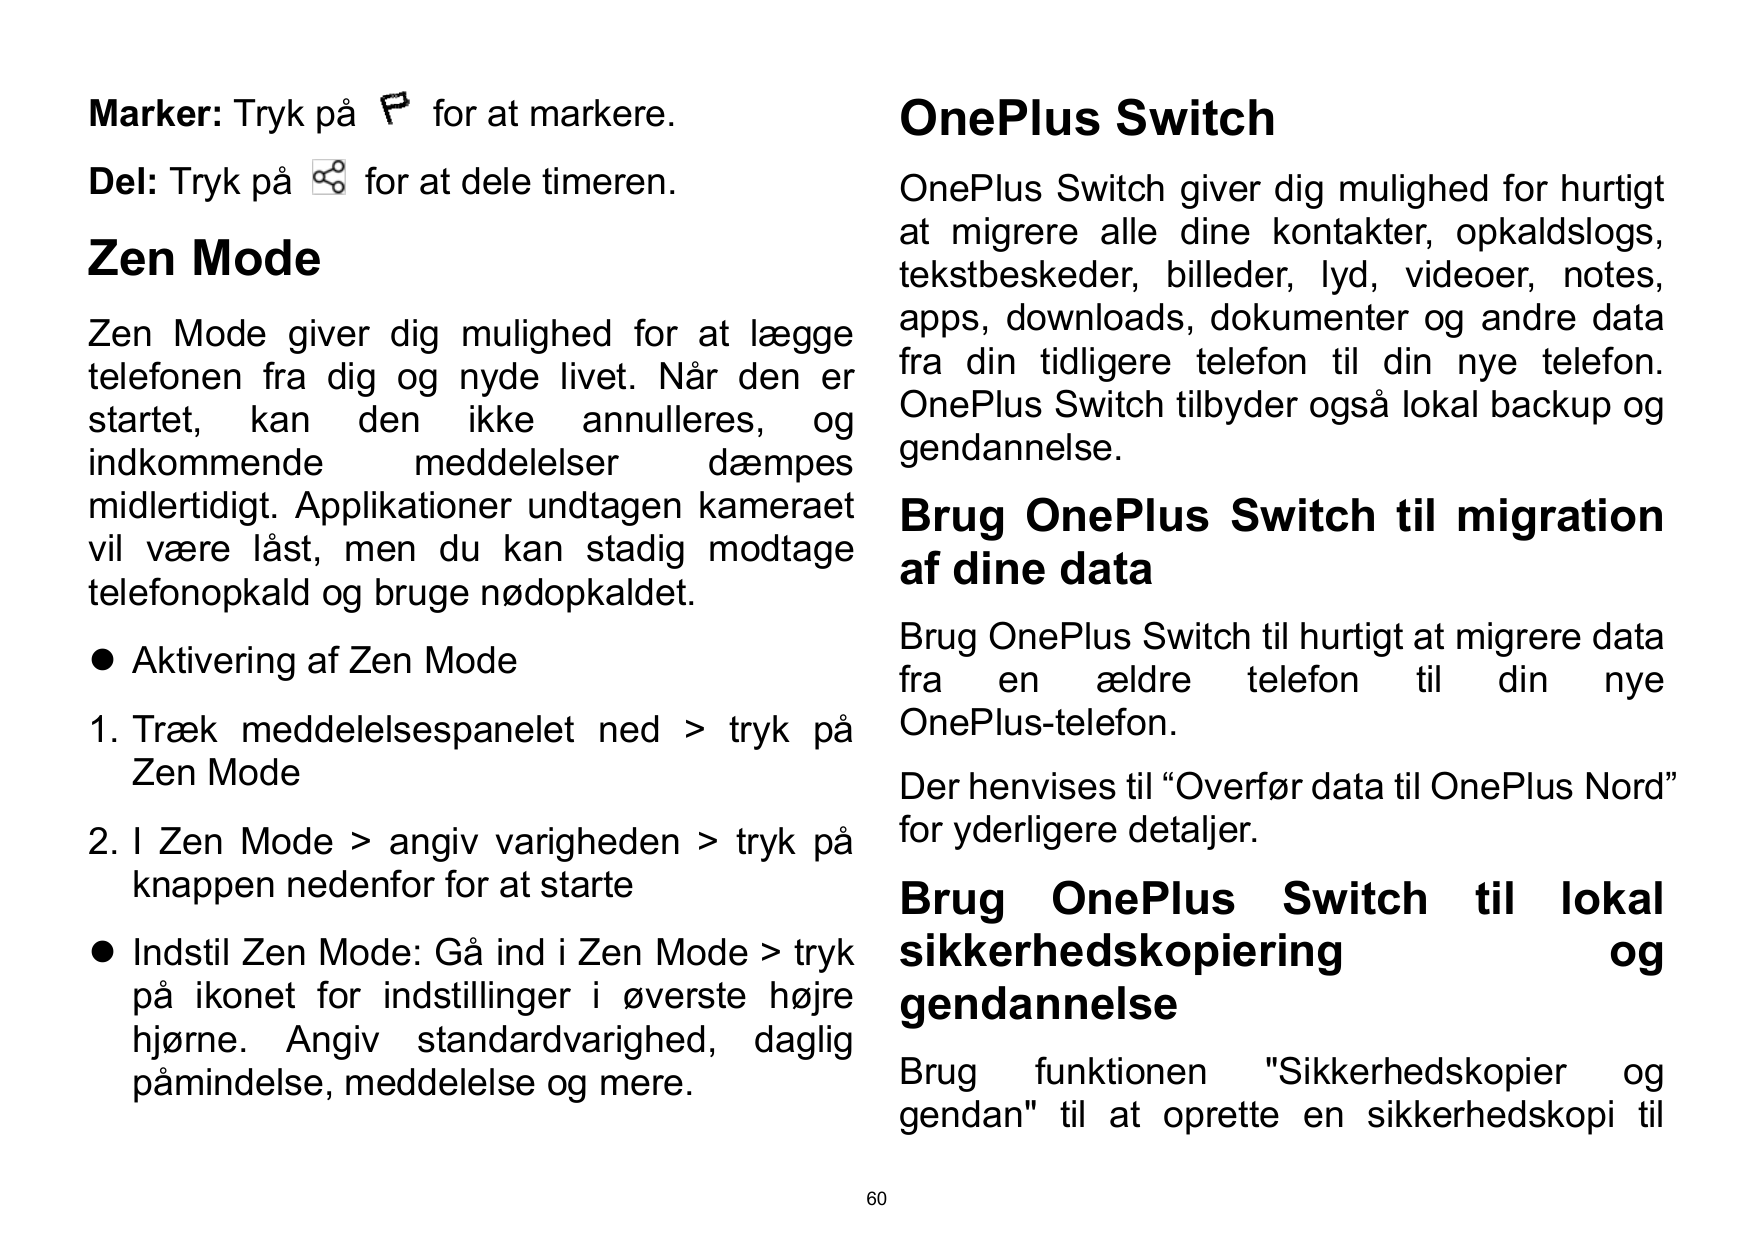 Marker: Tryk påDel: Tryk påOnePlus Switchfor at markere.for at dele timeren.OnePlus Switch giver dig mulighed for hurtigtat migr